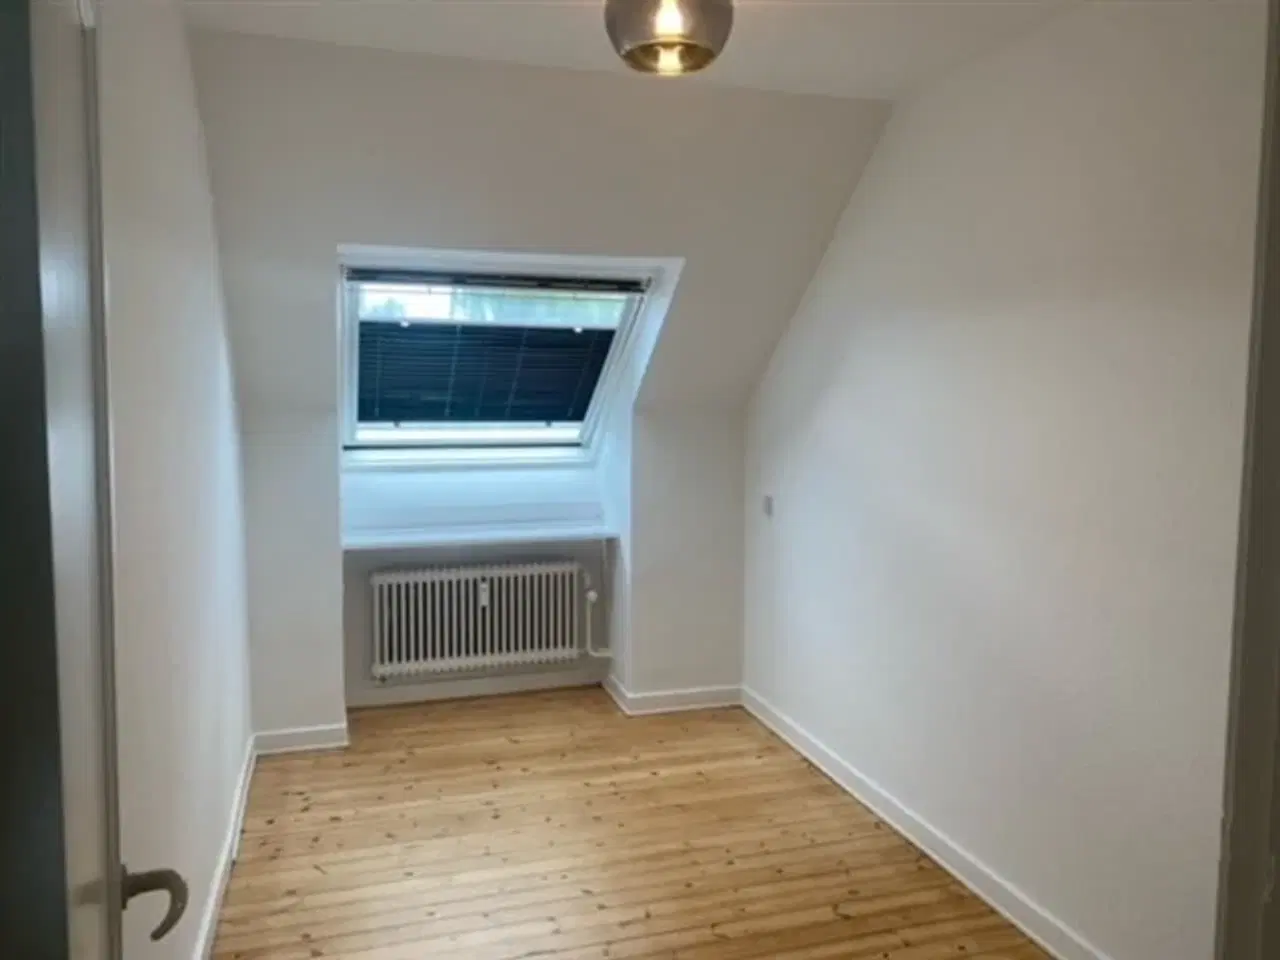 Billede 1 - Room rental with private apartment during weekdays., Glostrup, København